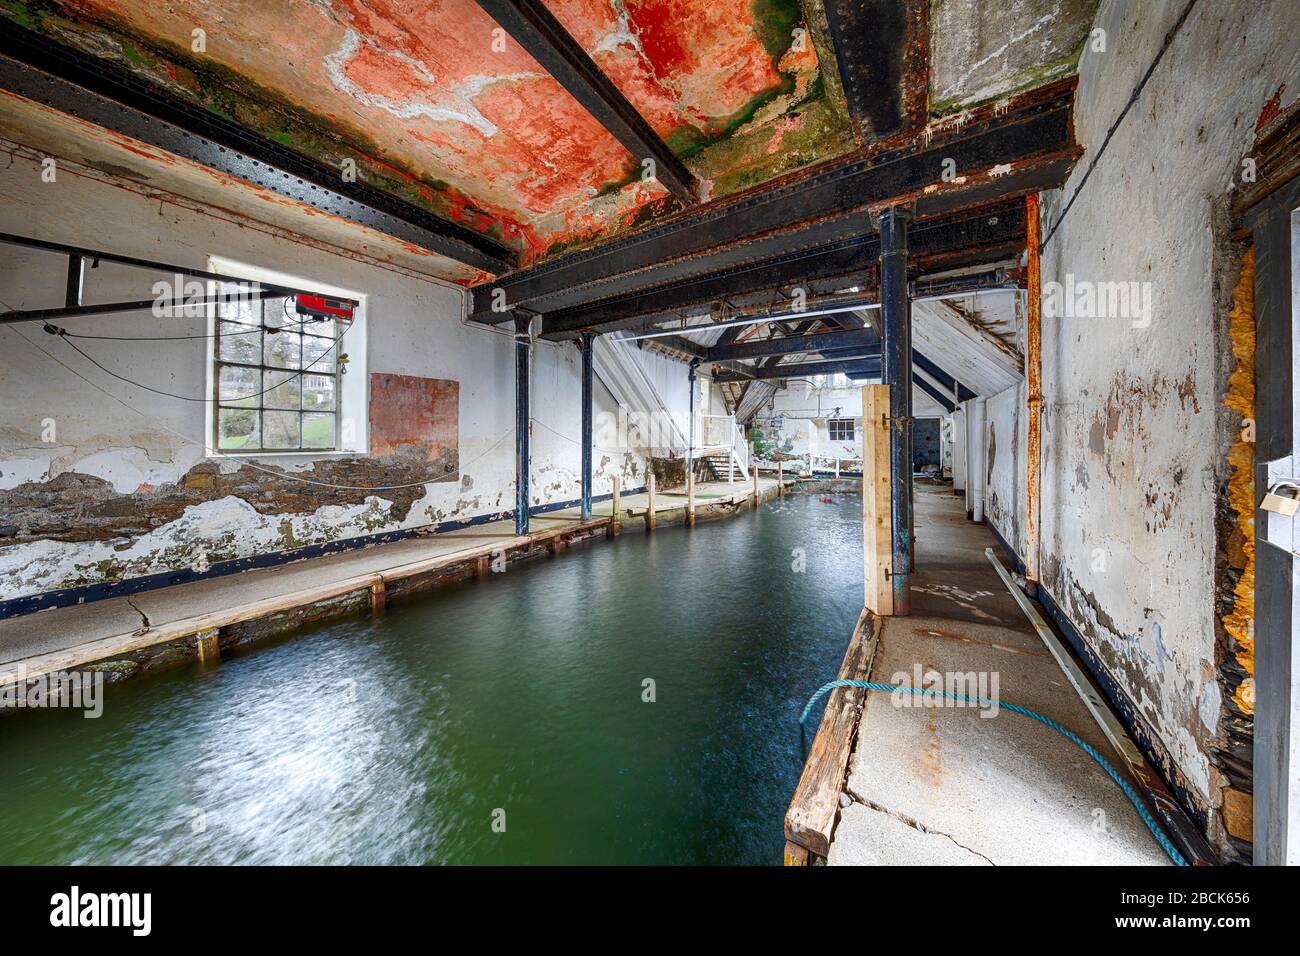 Abbandonata boathouse interno urbano esplorazione hdr Foto Stock